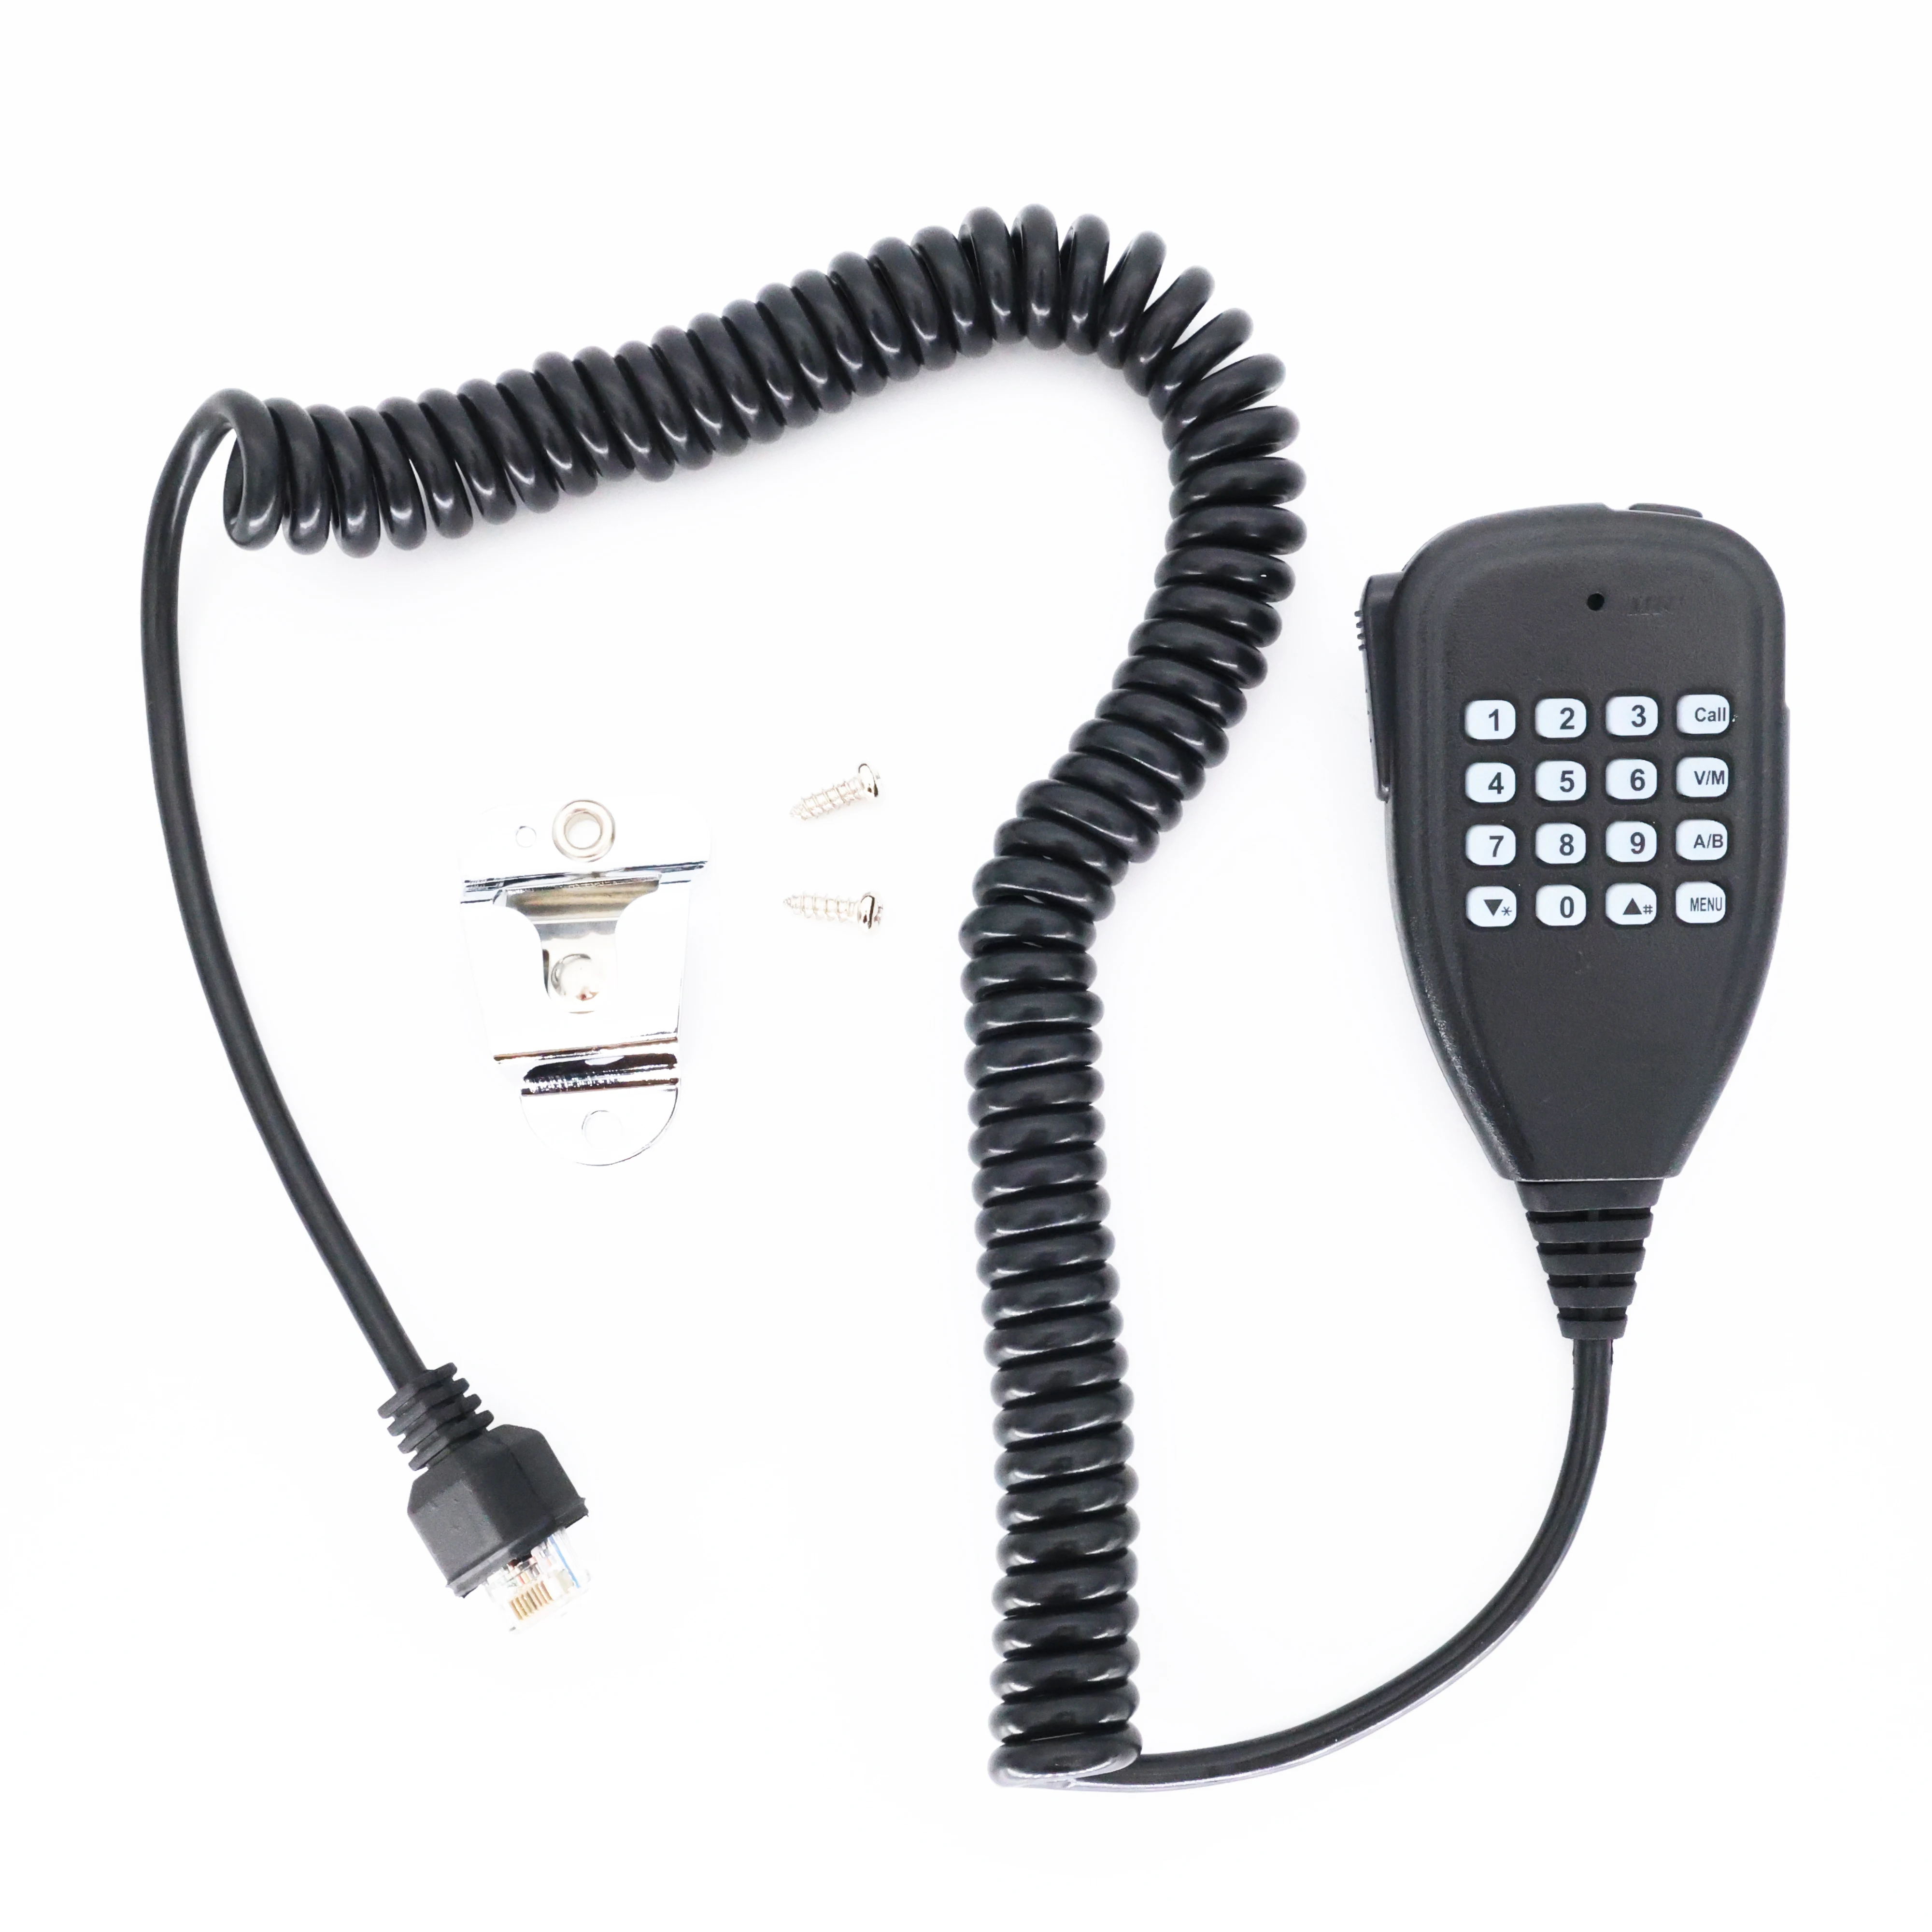 Leixen מיקרופון עבור טלפונים שני רדיו דרך VV-898S 25W VV-808 הווקי טוקי - 2